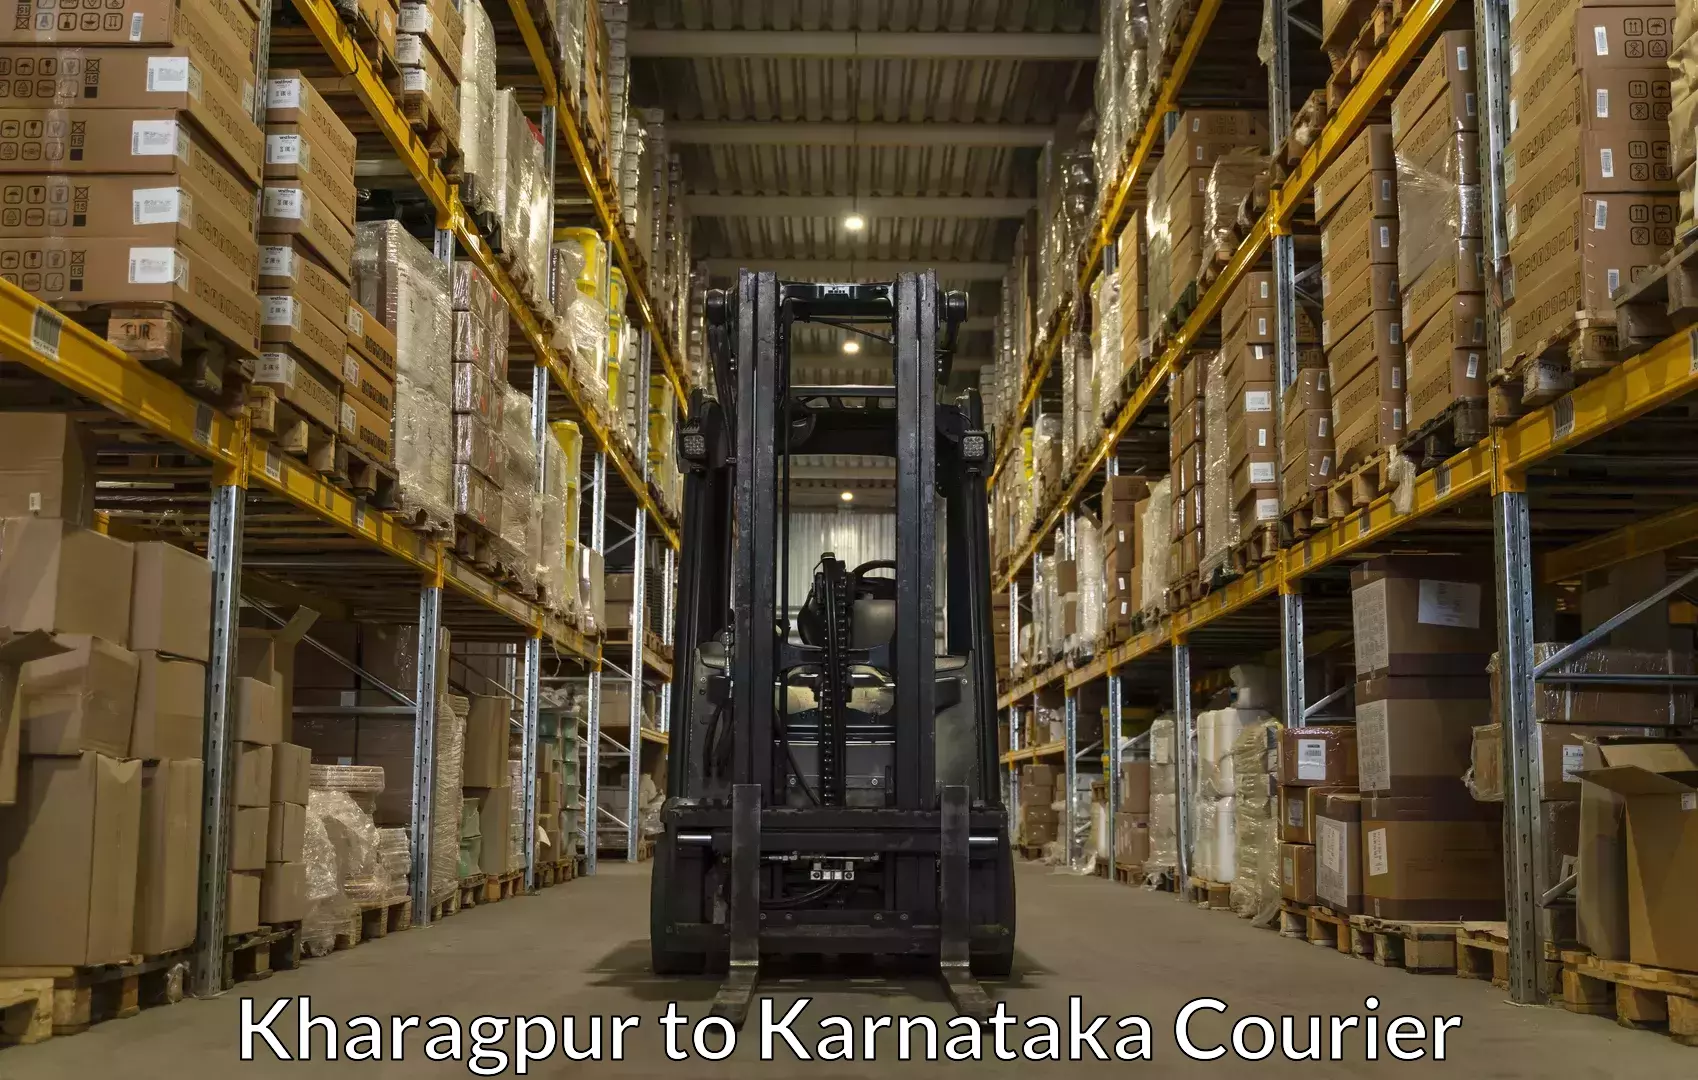 Reliable luggage courier Kharagpur to Karnataka